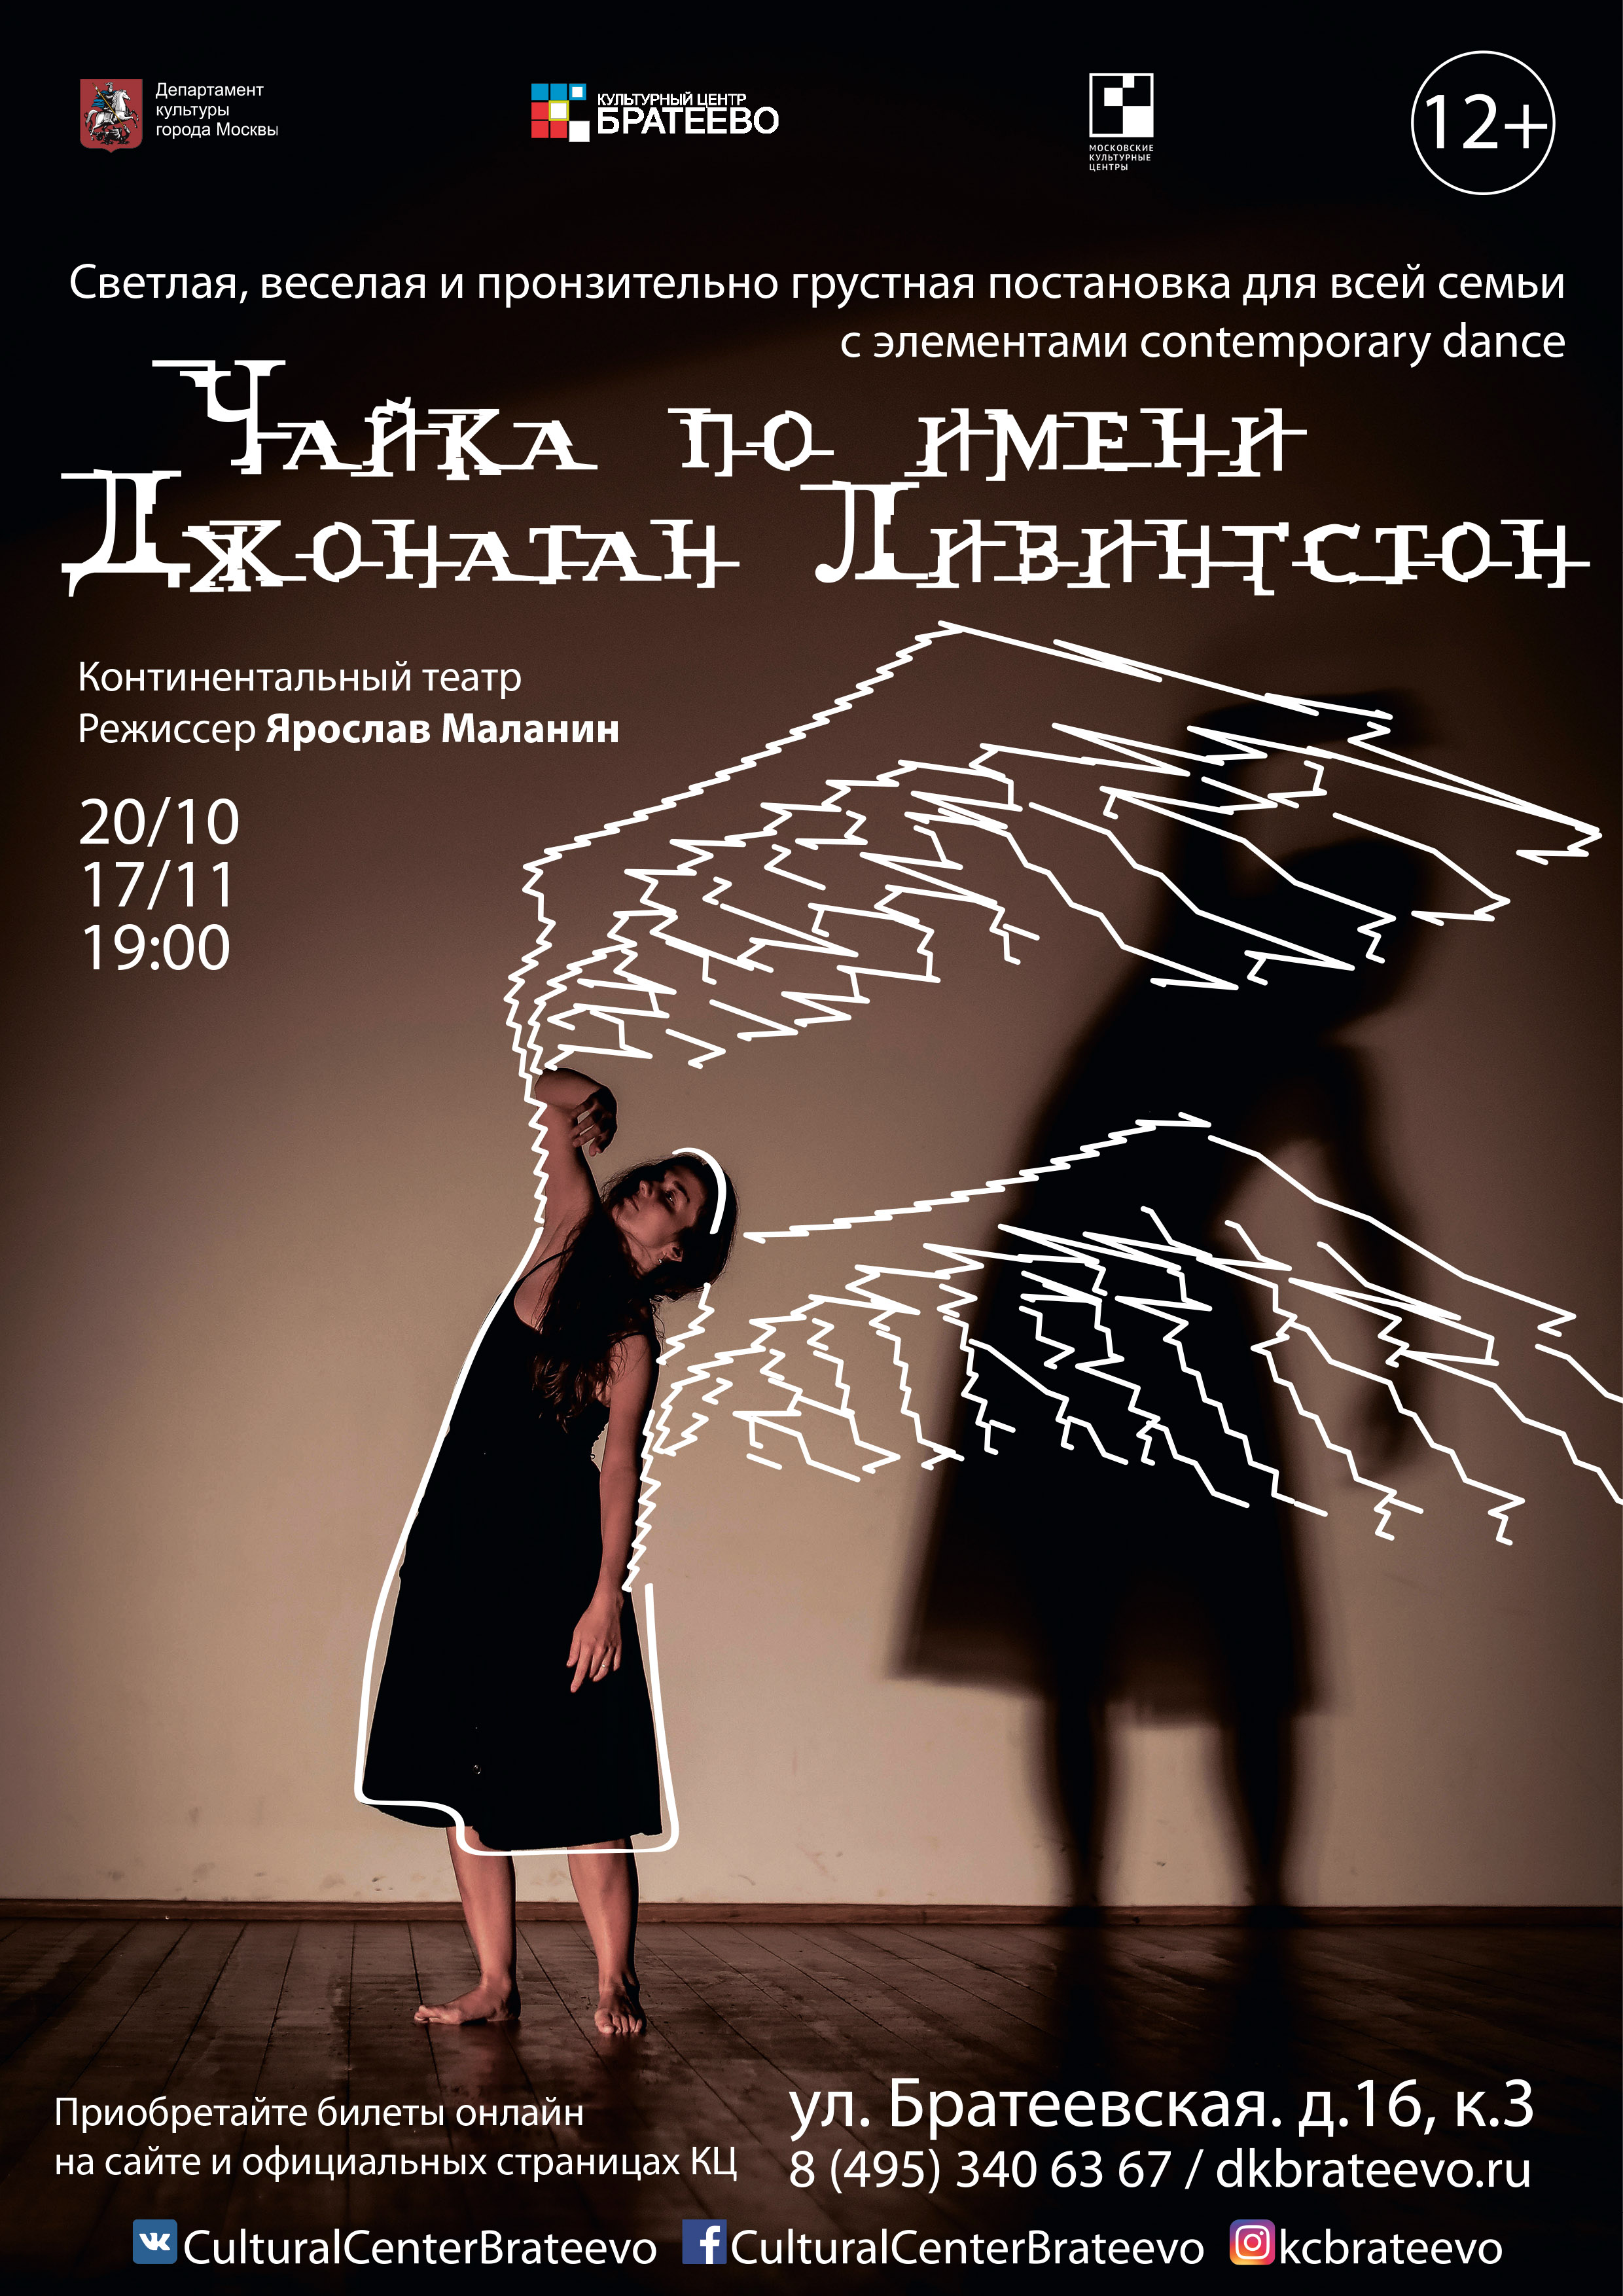 Спектакль «Чайка по имени Джонатан Ливингстон» – события на сайте «Московские Сезоны»